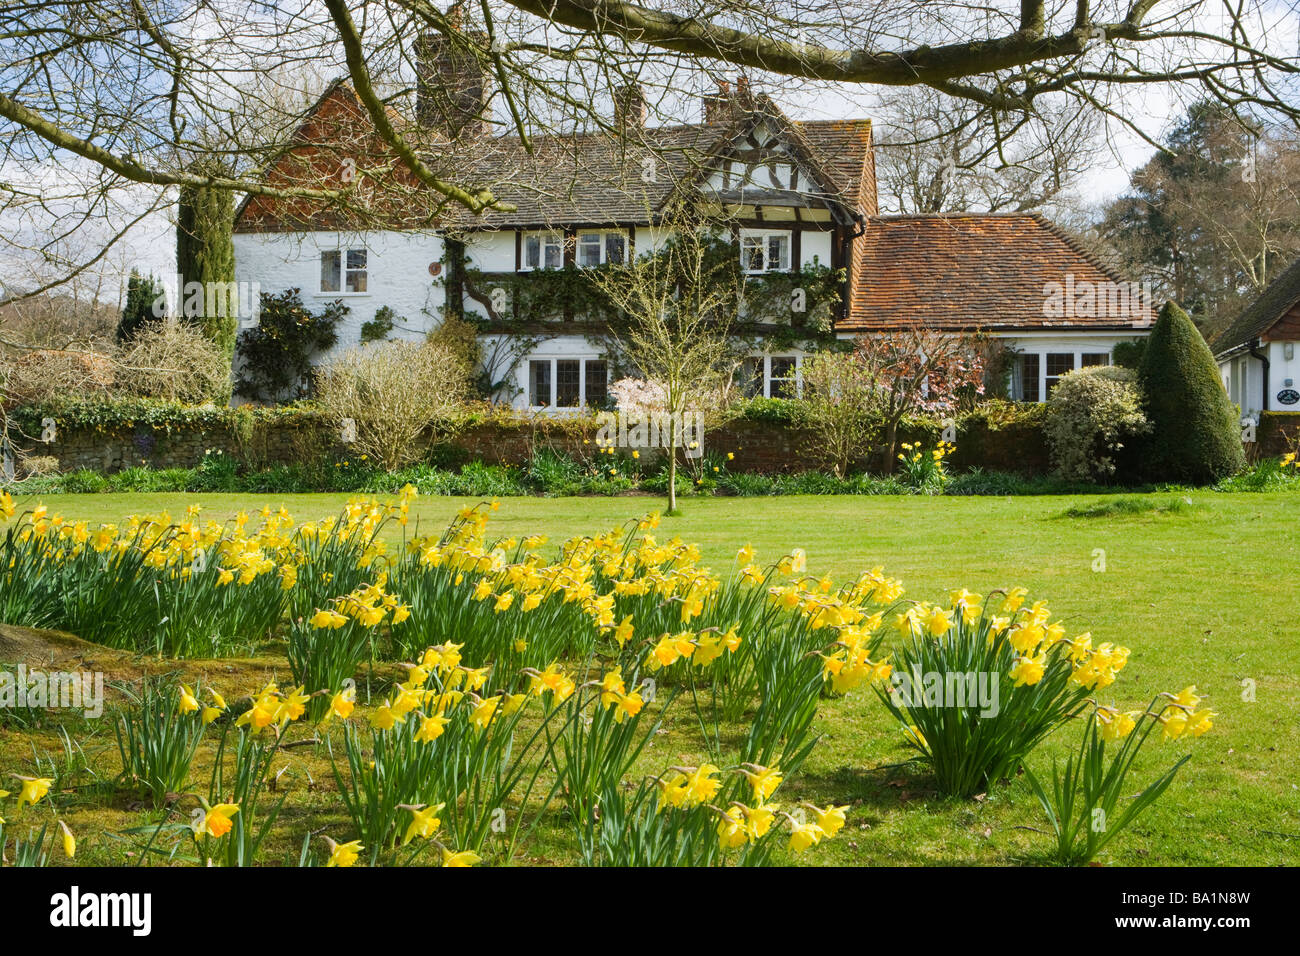 Ferienhaus und Narzissen. Shamley Green, Surrey, UK Stockfoto